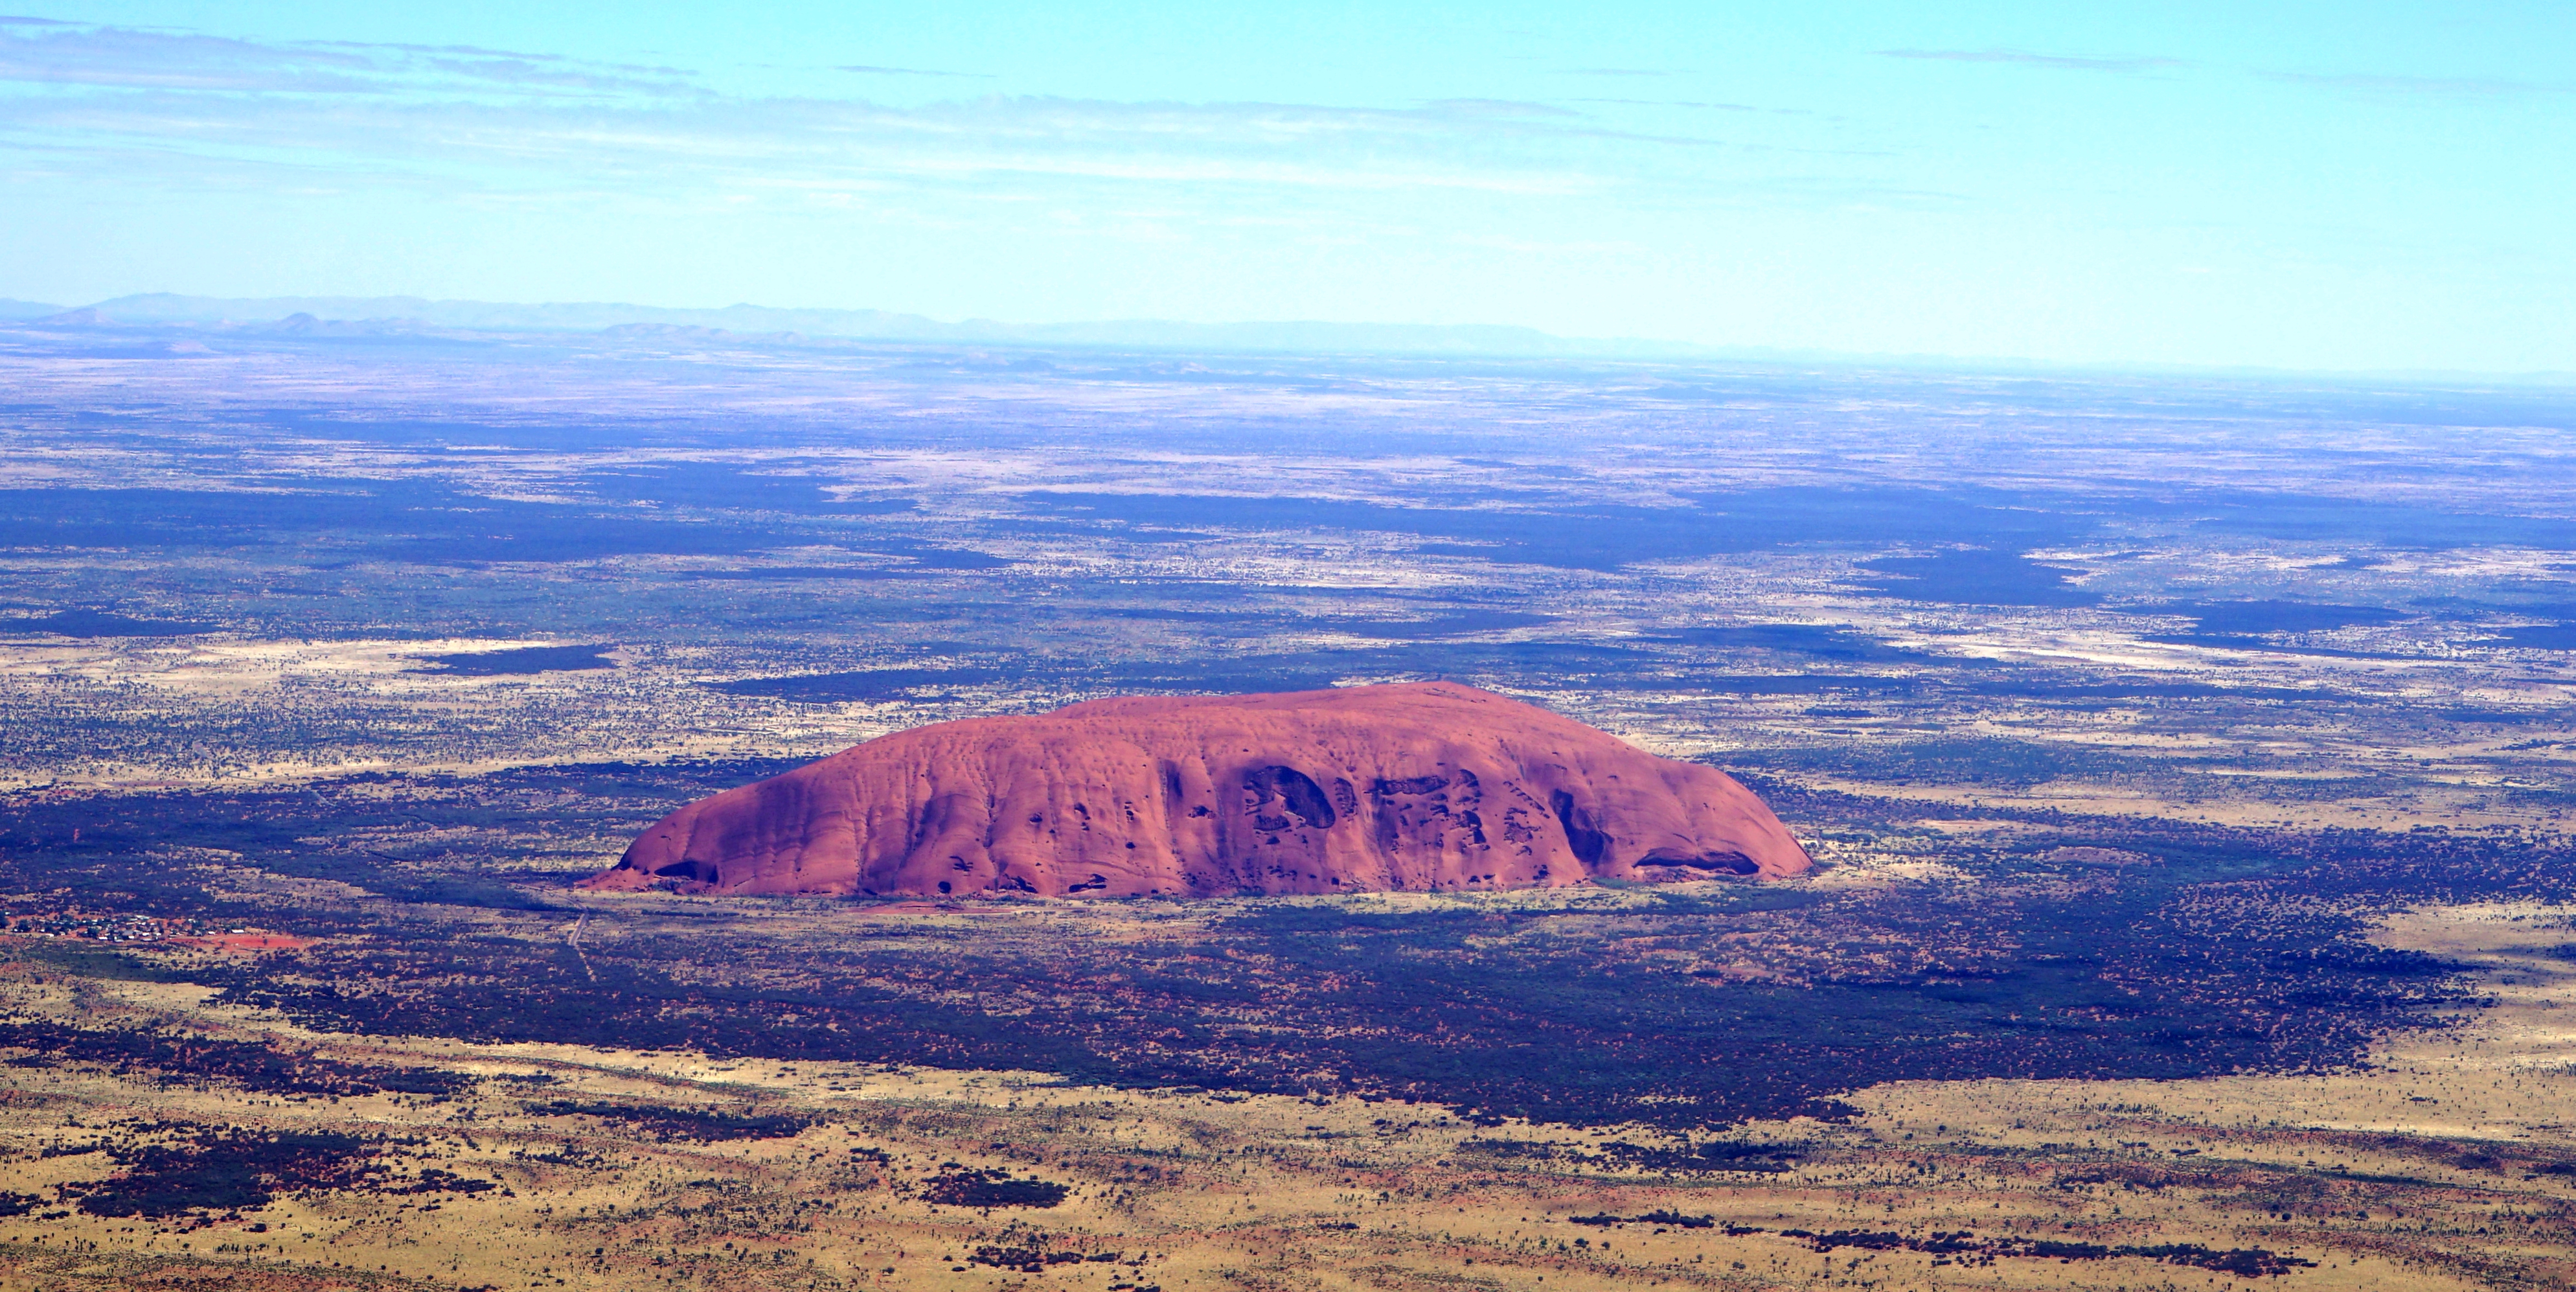 3,澳洲旅游景点 红色巨岩 艾尔斯岩石 ayers rock 艾尔斯岩是位于澳洲